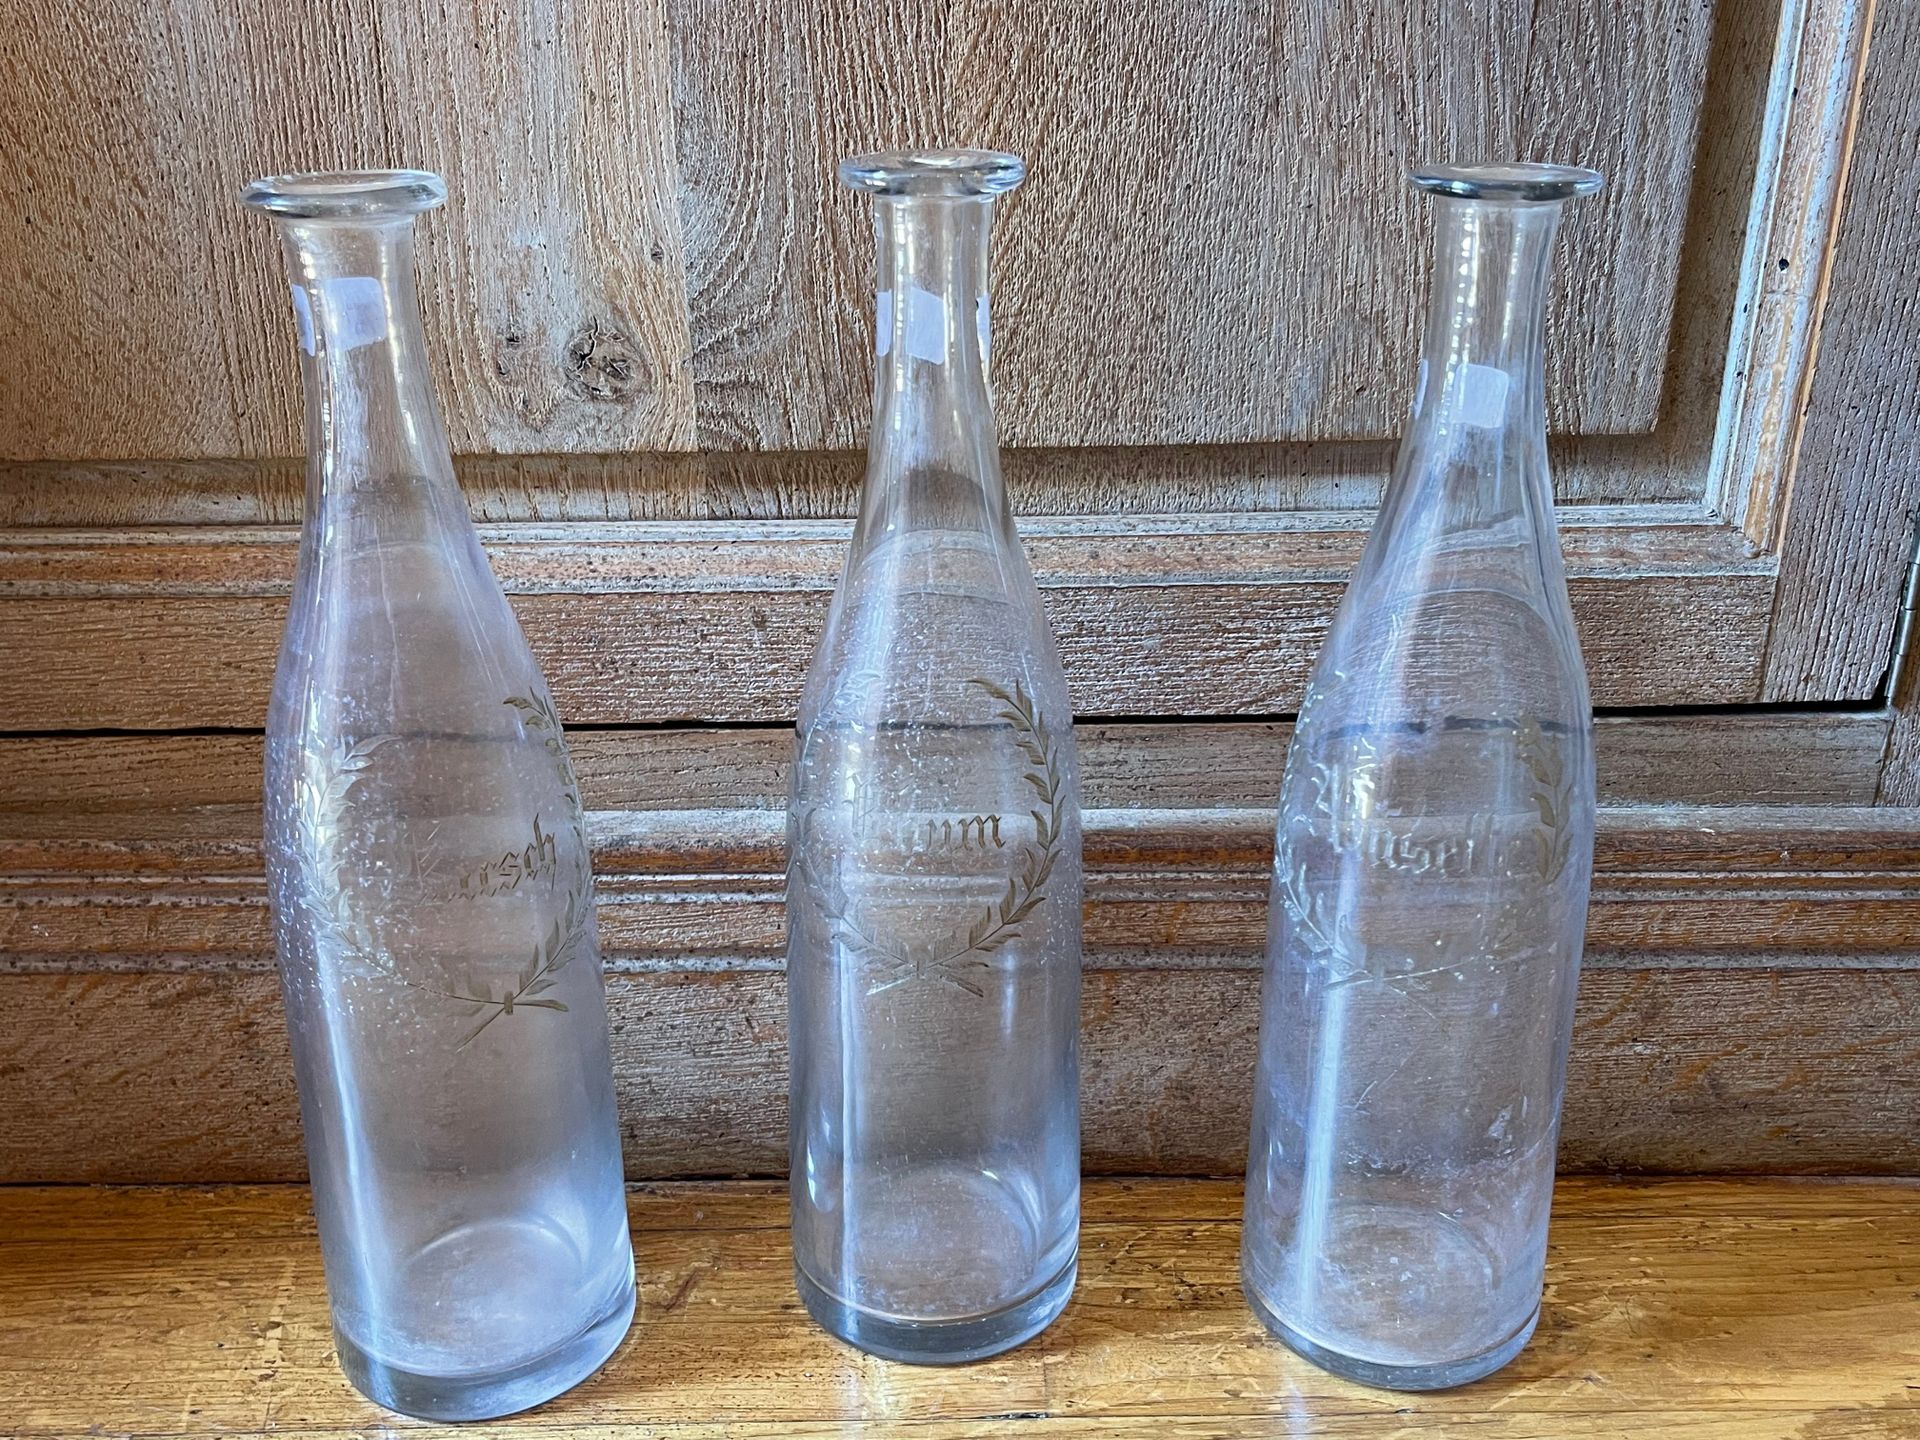 Null Three engraved glass bottles "Rhum, Anisette, Kirsh